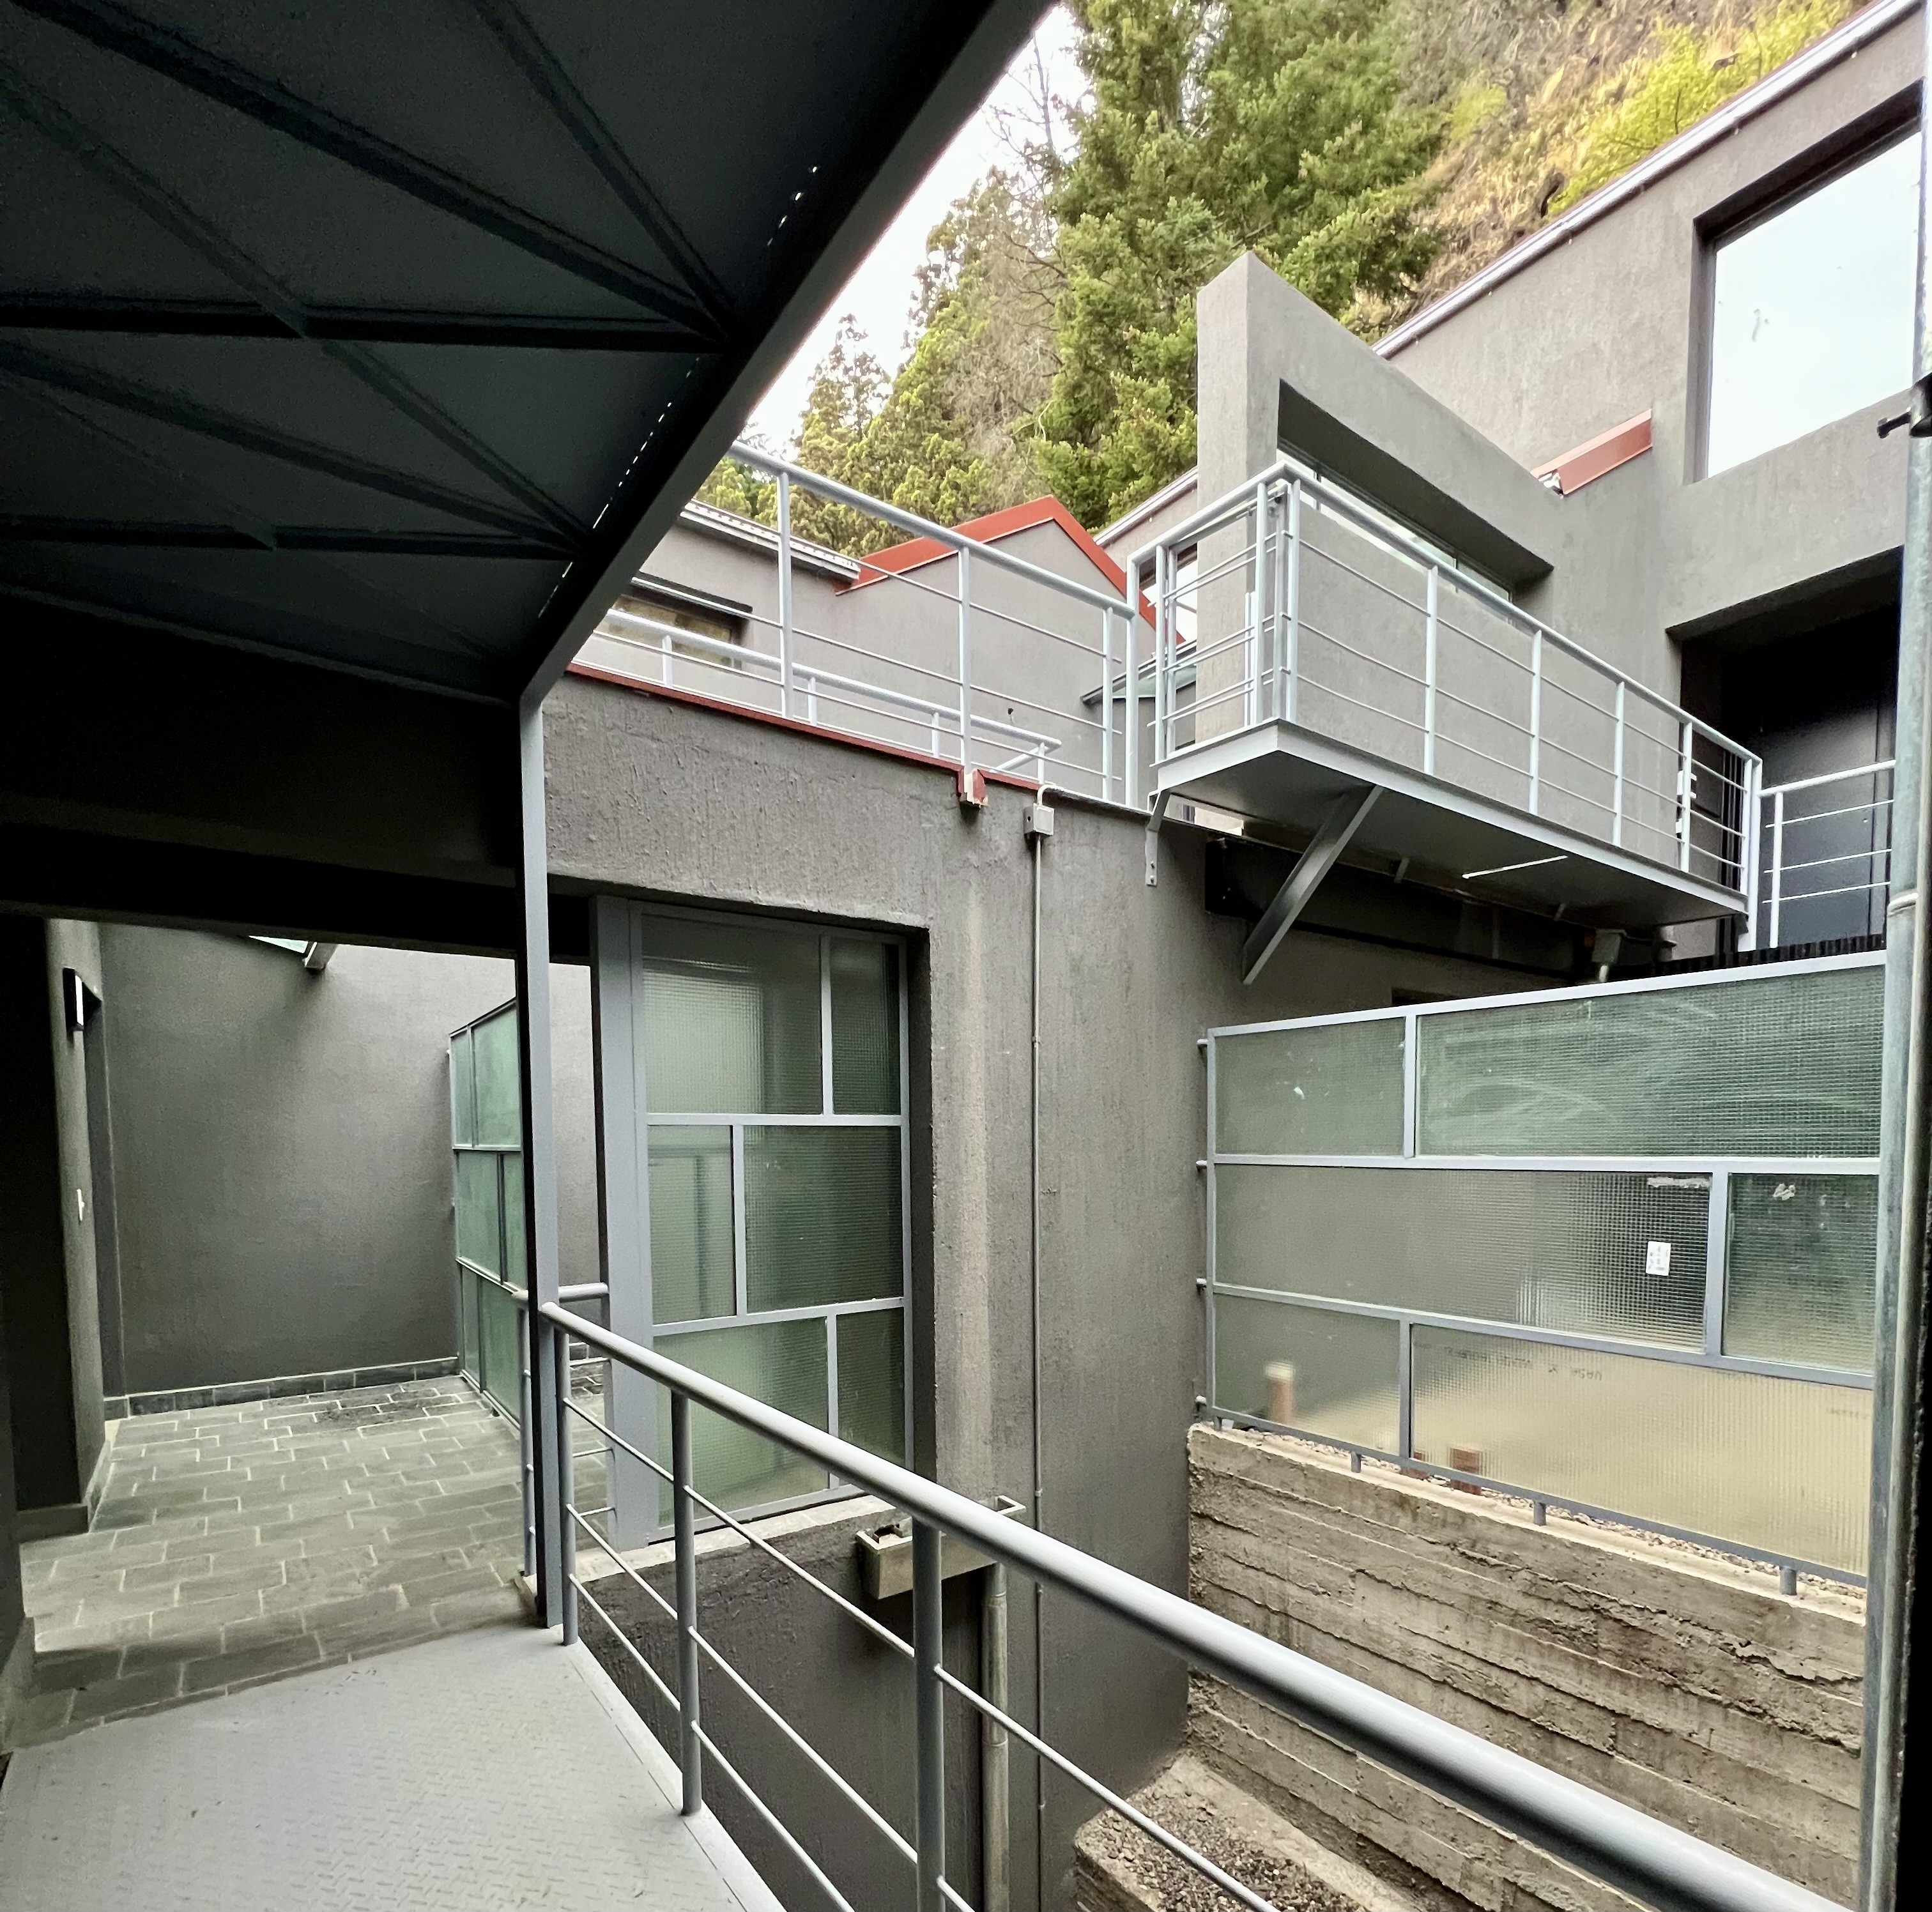 D212 - Departamento a estrenar de 1 dormitorio 53 m2 y 12 m2 de terraza  - Bajada de los Andes - Zona Centro